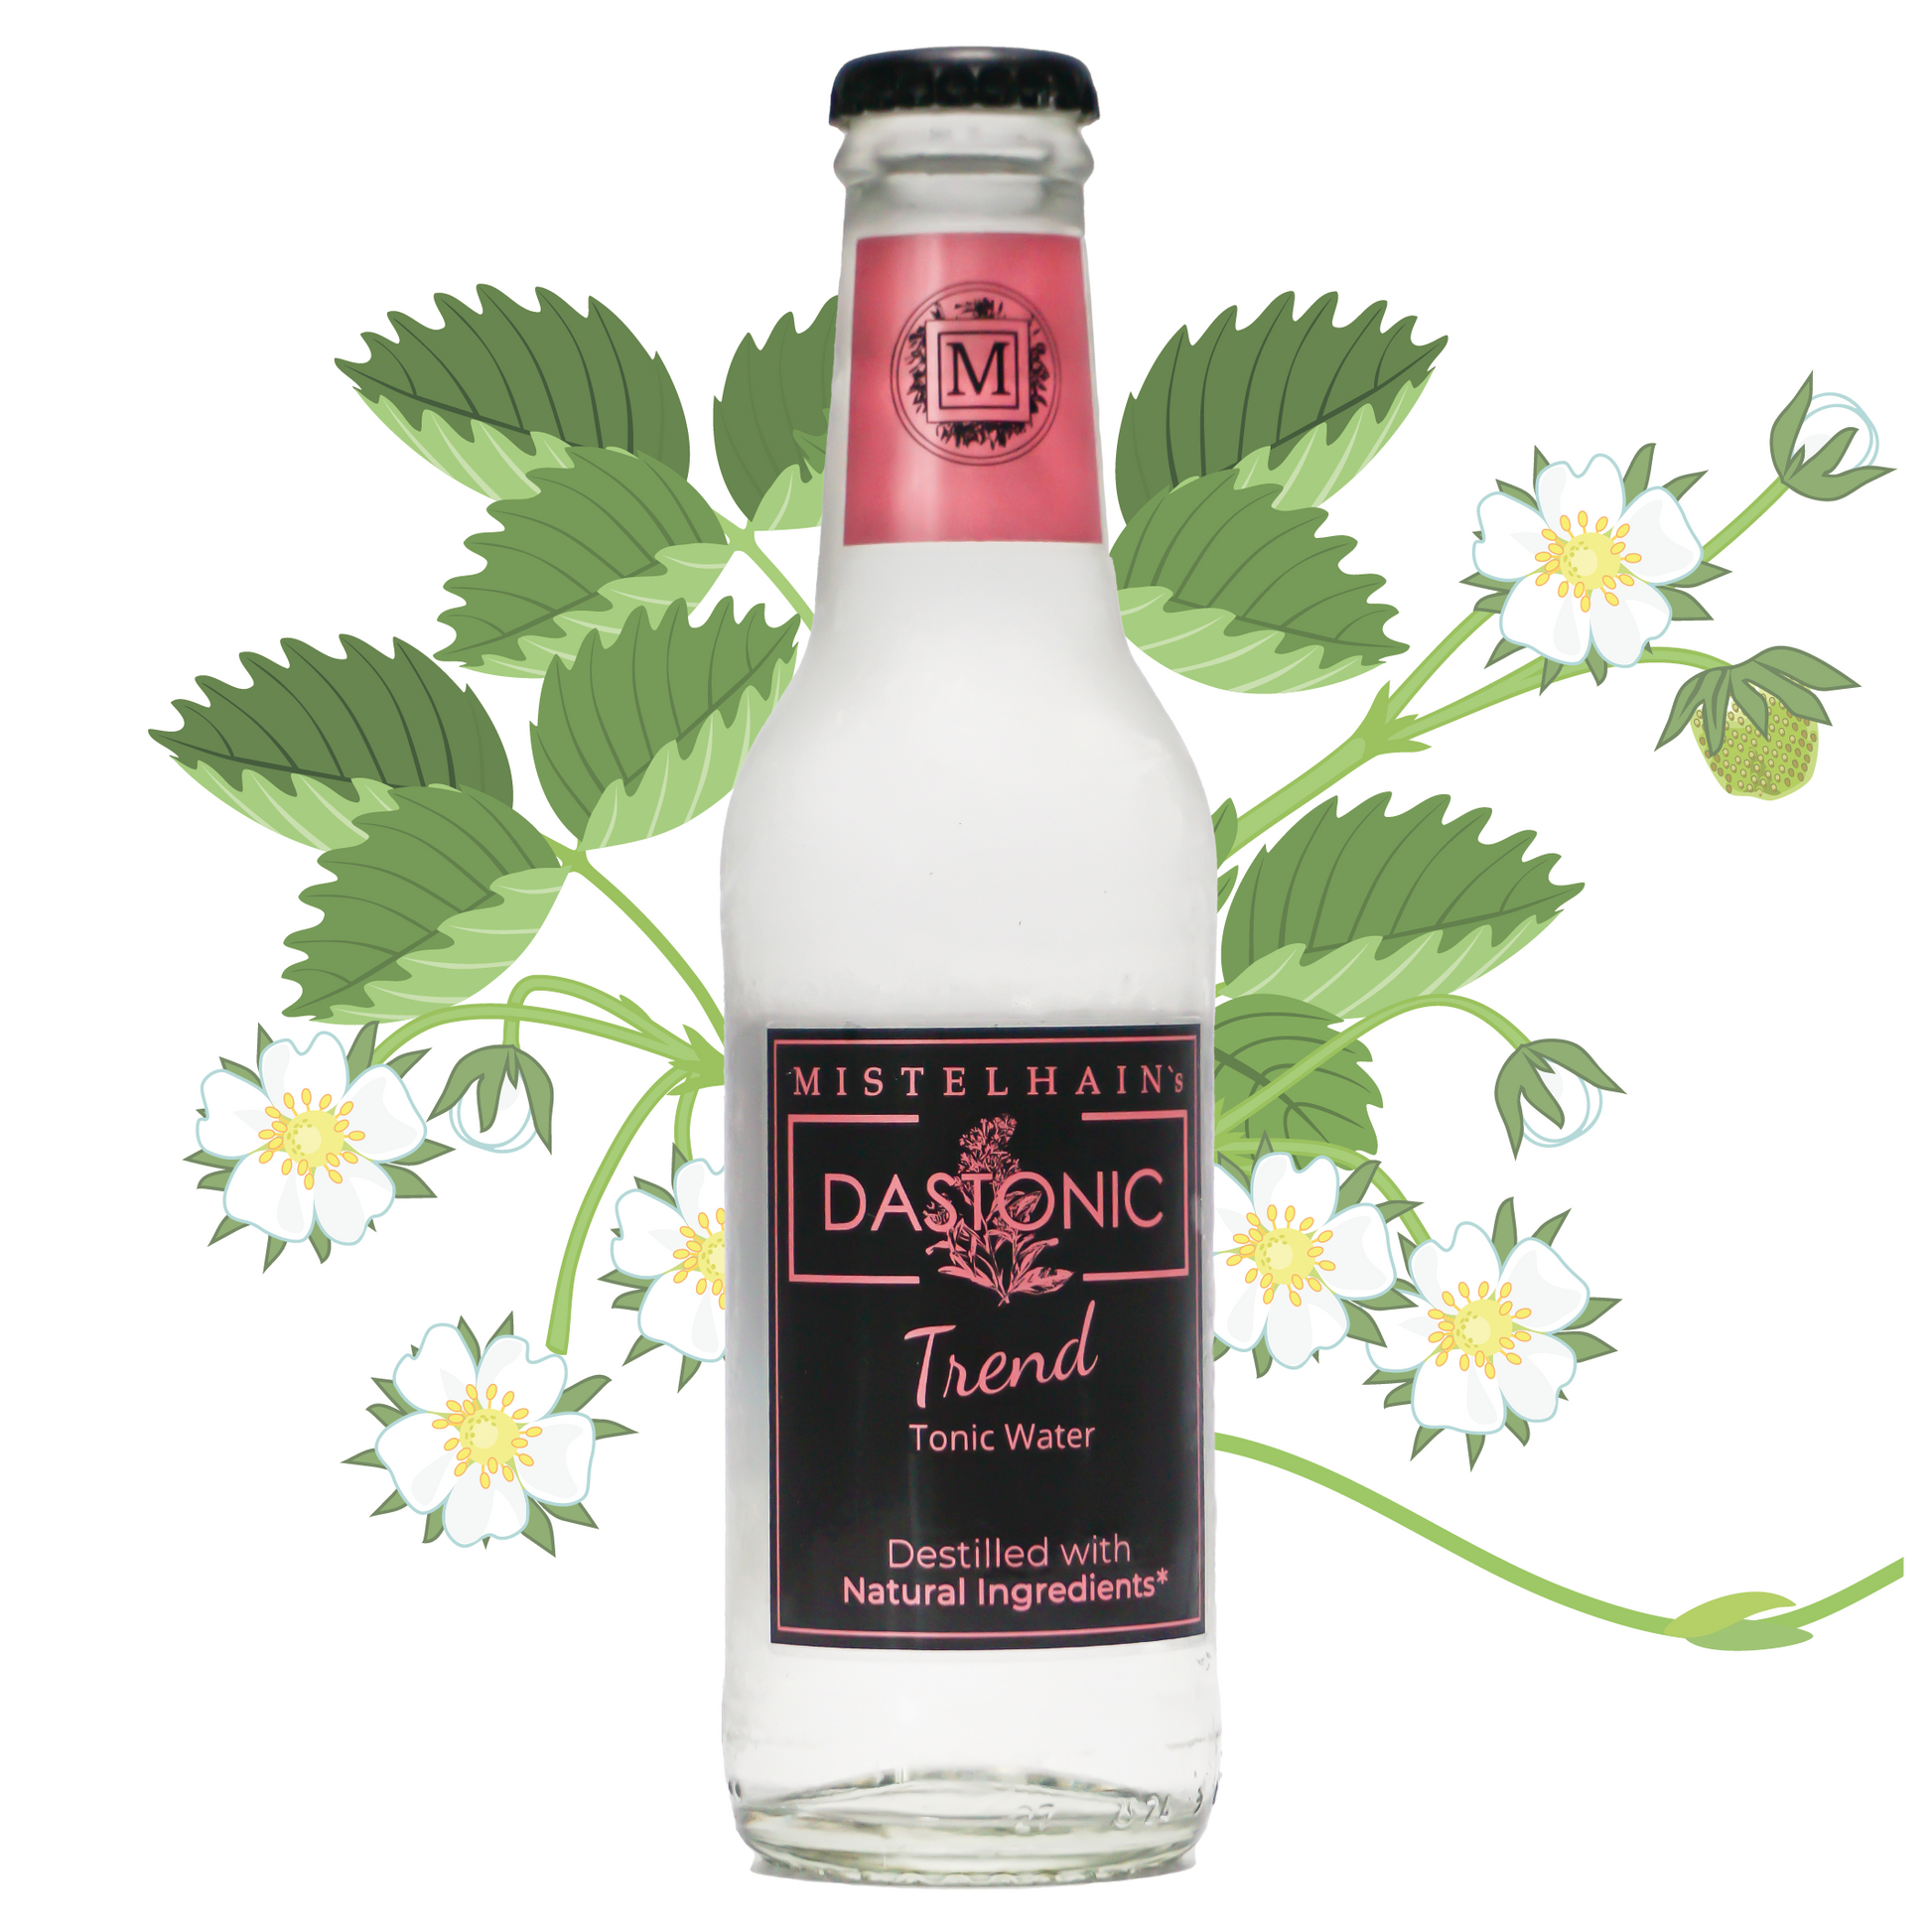 Tonic Water MIstelhain's DASTONIC Trend in einer 200 ml Glasflasche mit einem schwarz-rosa Etiketten und Kronenkorken. Im Hintergrund sind Erdbeer-Blüten zu sehen.